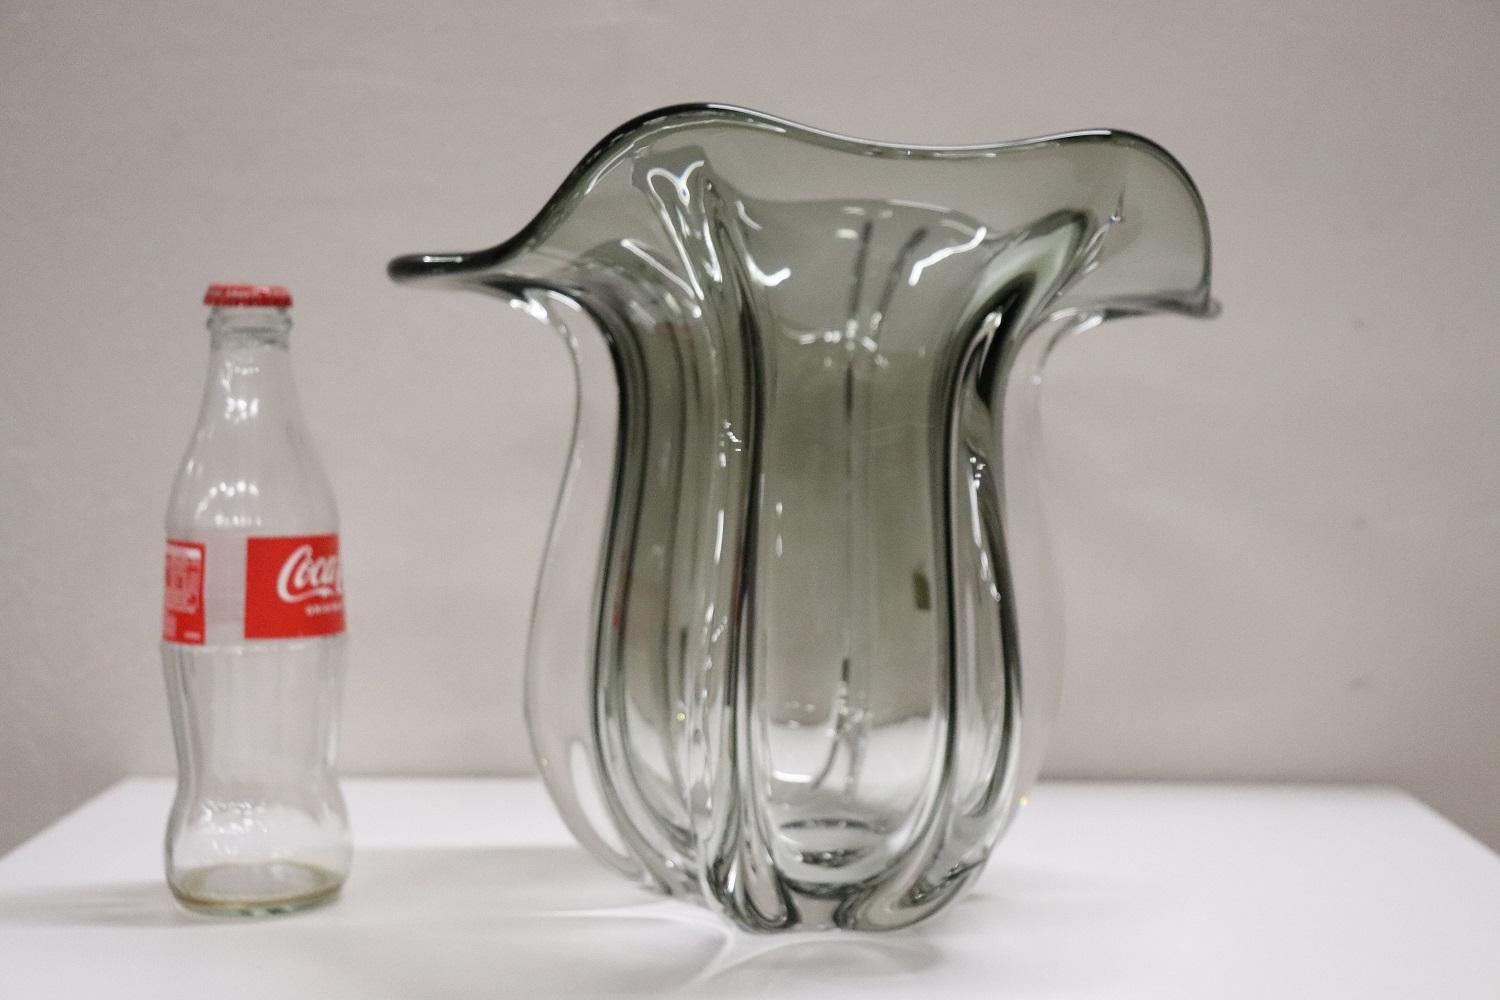 Vase aus raffiniertem Kunstglas, Italien, Produktion 1970er Jahre Murano. Nicht unterzeichnet. Es gibt ein kleines Originaletikett, aber ohne Schrift. Typisches Modell namens Tulpe aus raffiniertem, geräuchertem, transparentem Glas. Perfekte